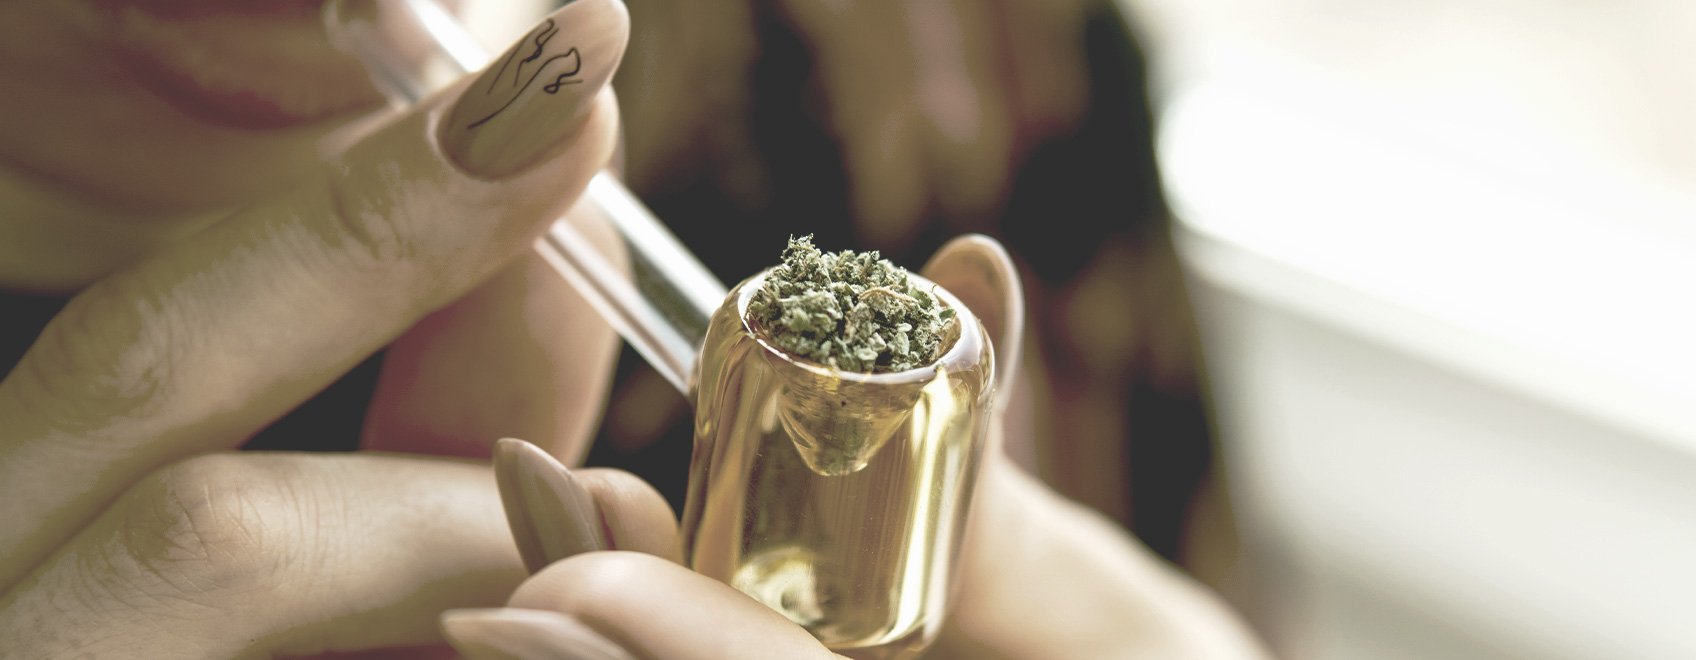 Welche Faktoren beeinflussen die Dauer eines Cannabis-Highs?